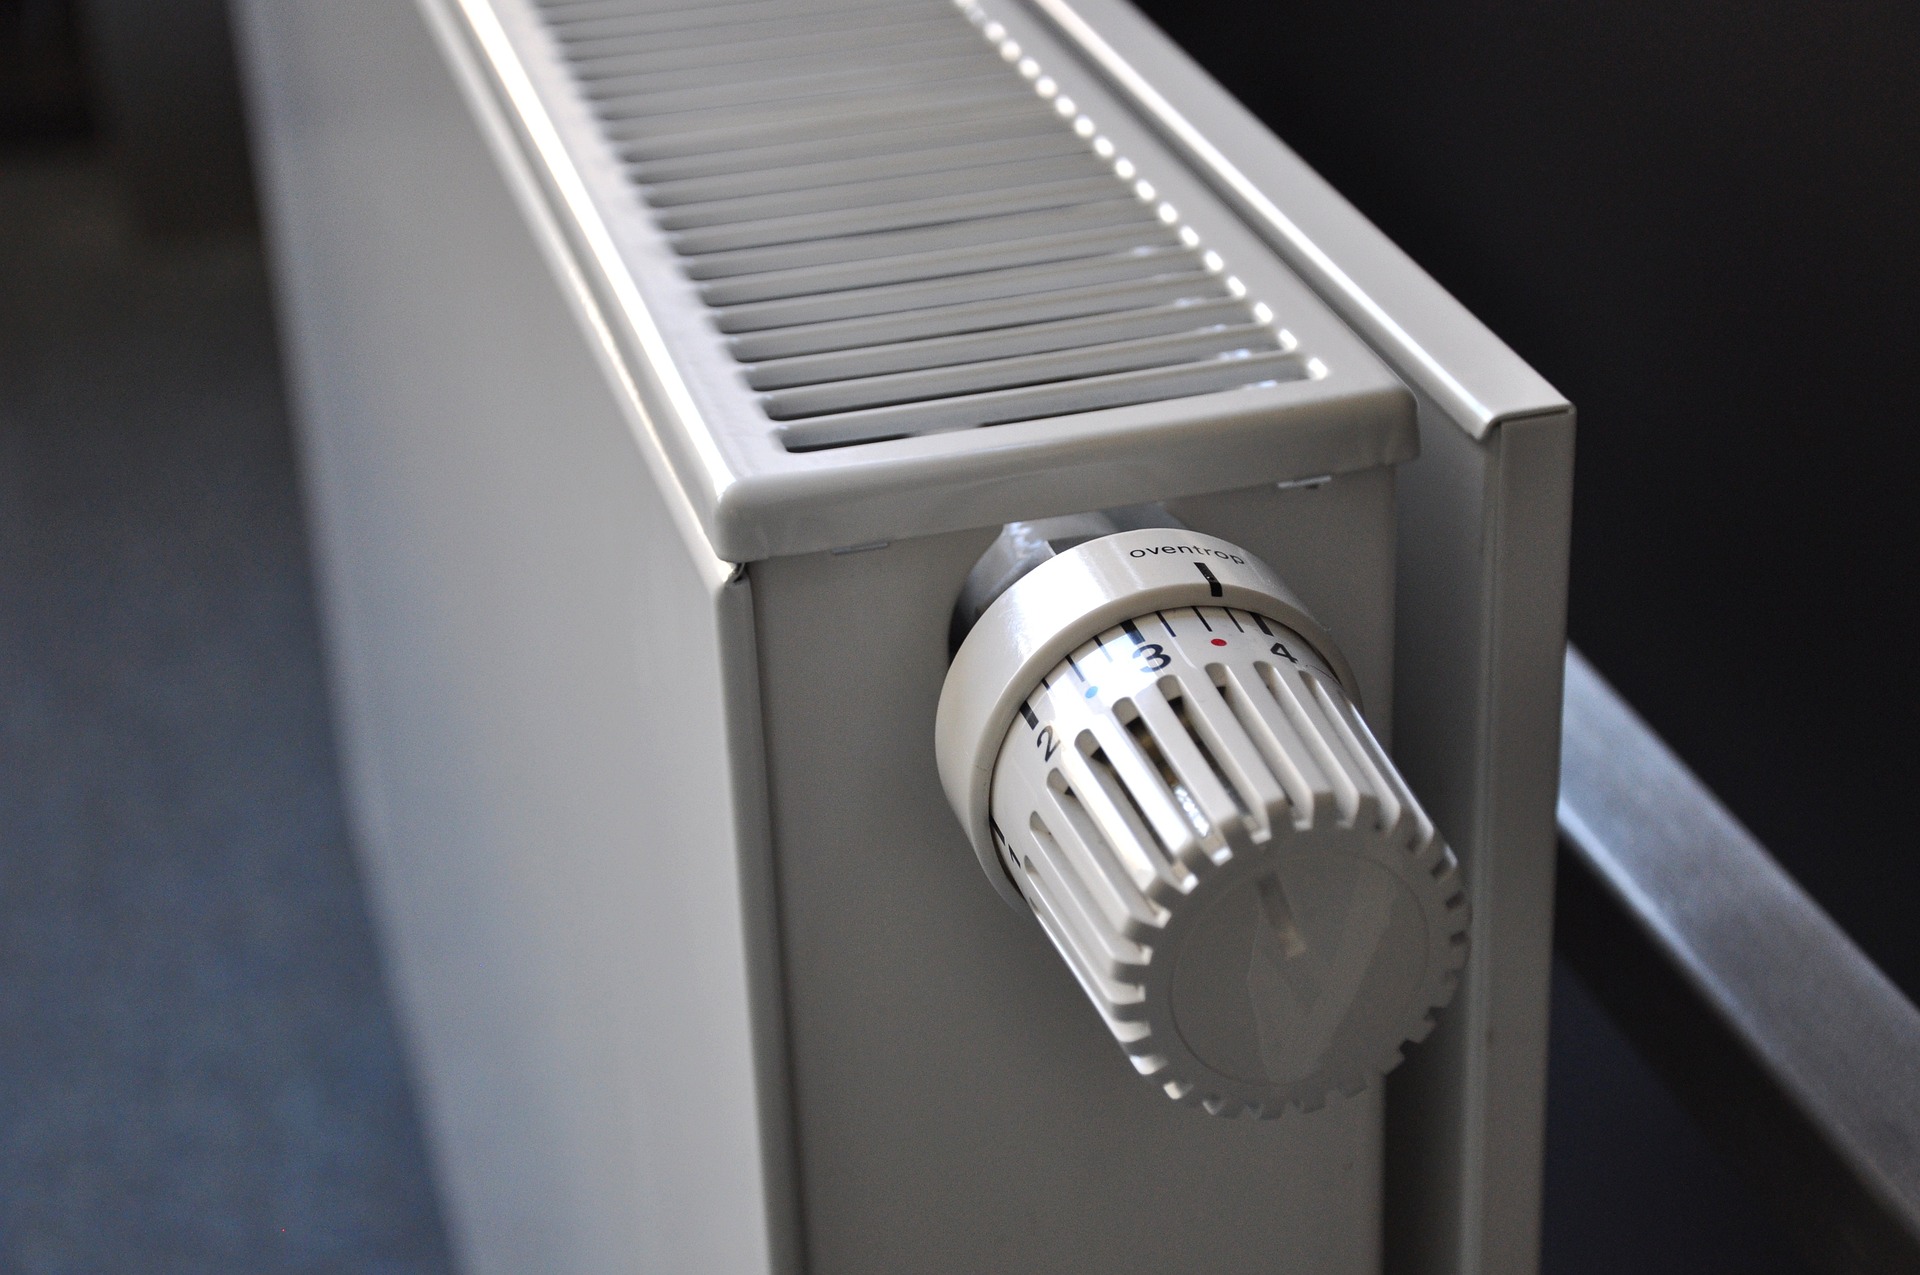 Nem melegszik a radiátor? Ezzel az egyszerű trükkel javíthatod meg!